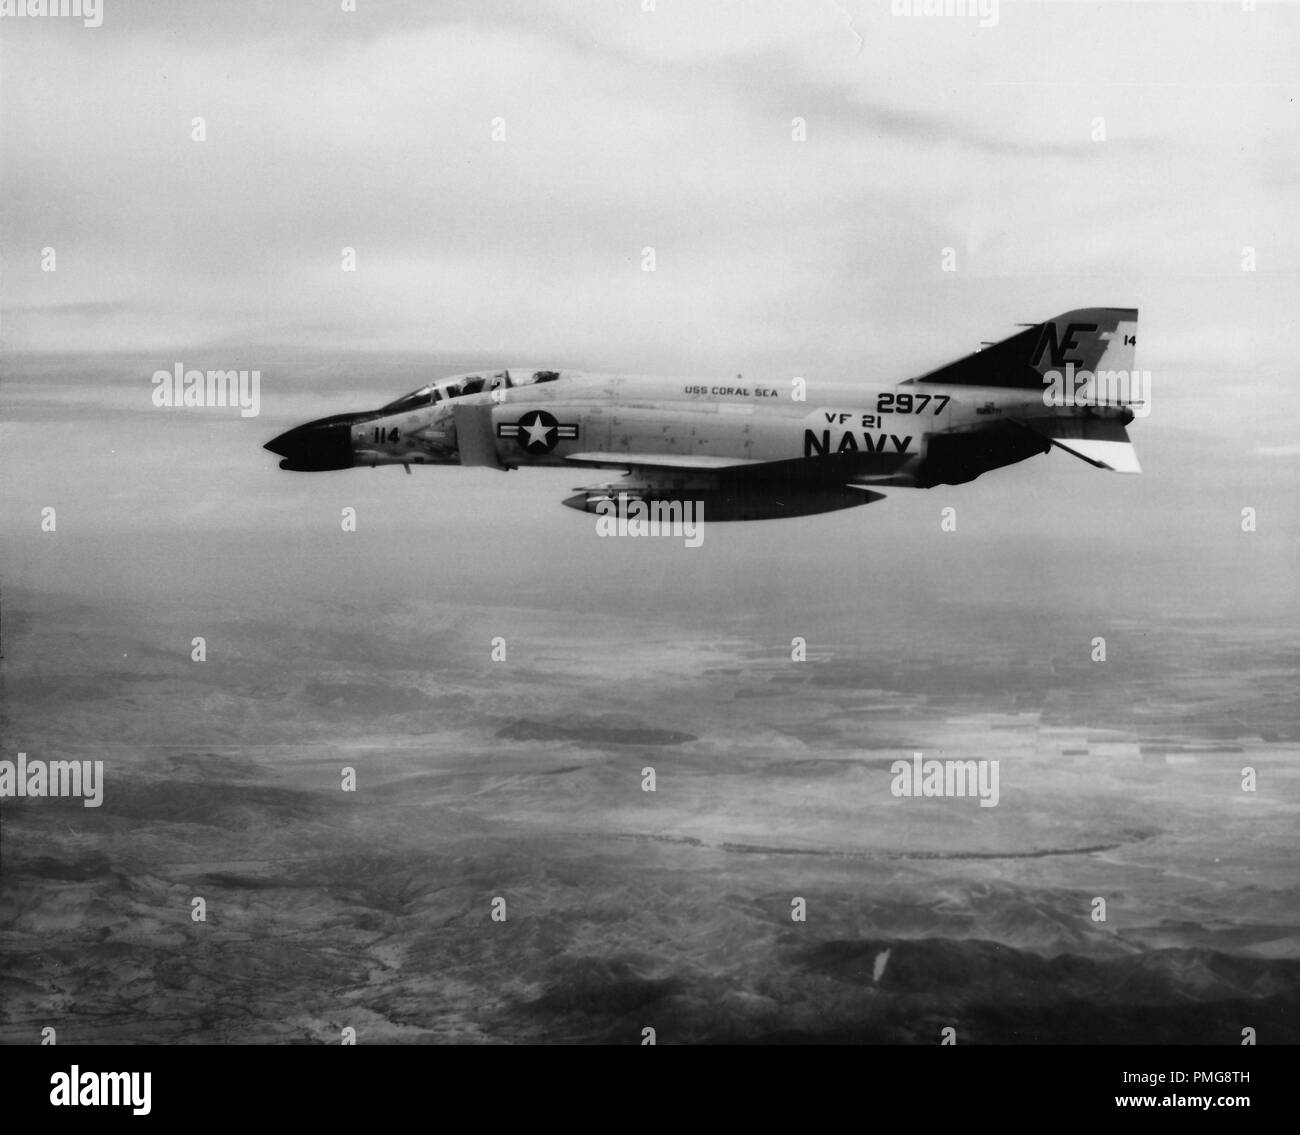 In bianco e nero la fotografia aerea mostra una vista di profilo della marina degli Stati Uniti McDonnell Douglas F-4 Phantom II, in volo con i numeri "114" sul suo naso, '2977' in prossimità della sua coda e le parole "USS Coral Sea' sul suo corpo, fotografato durante la Guerra del Vietnam, 1965. () Foto Stock